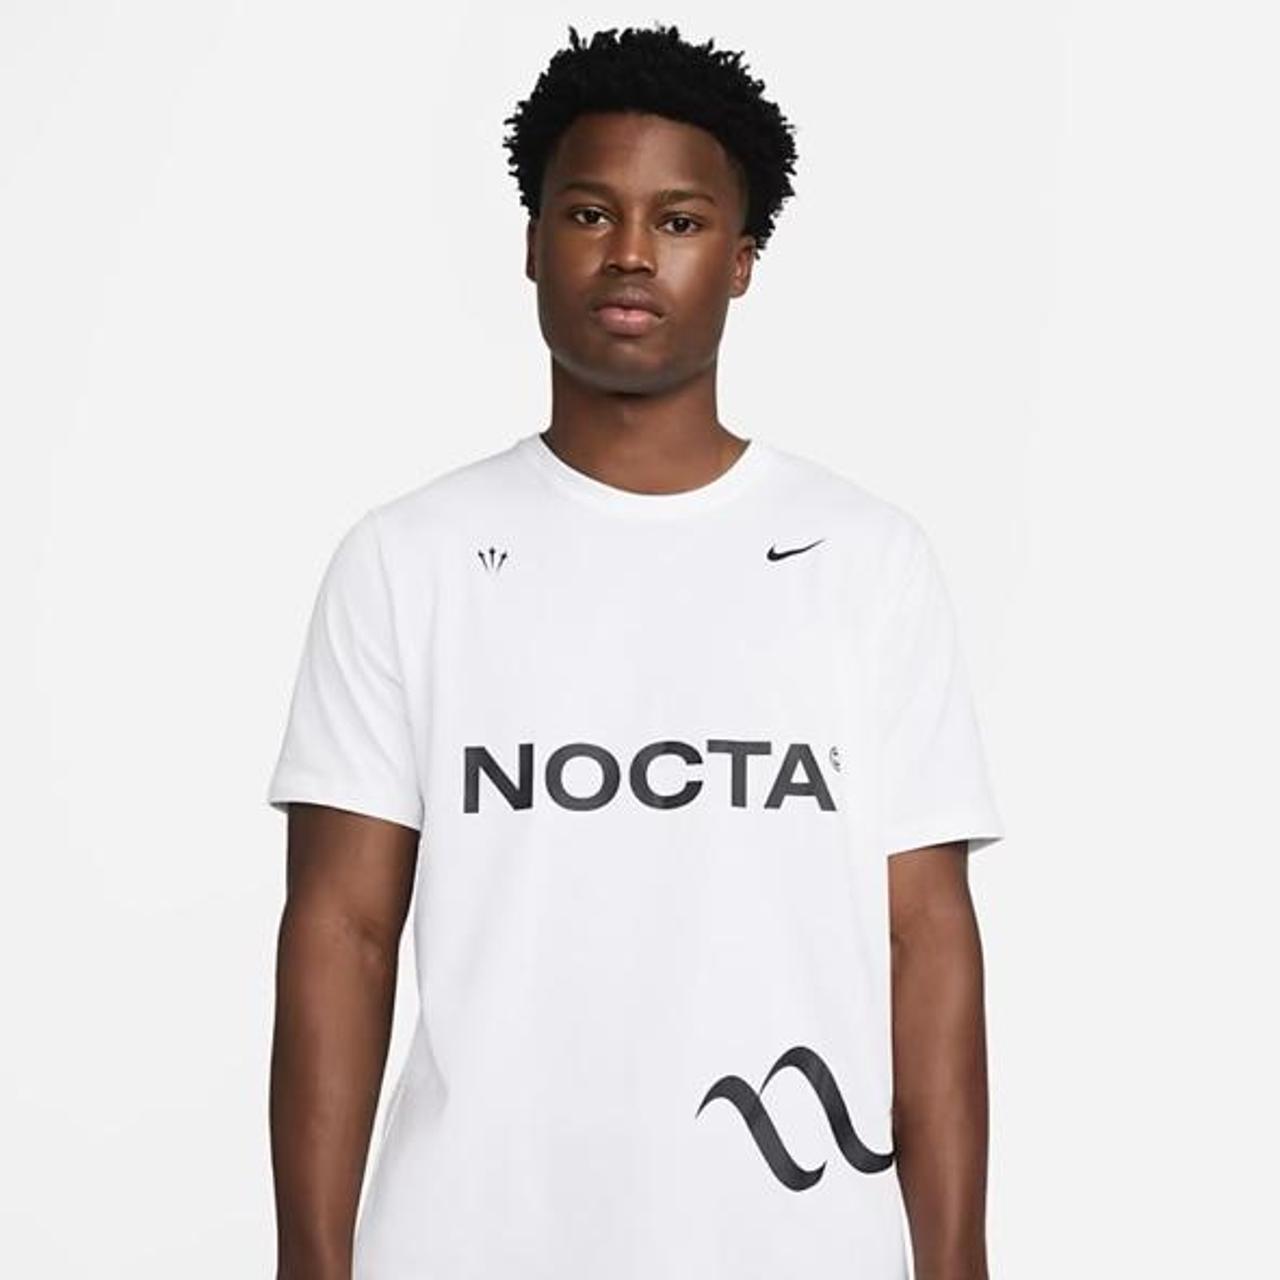 Nike Nocta Basketball Shirt in White Drake X Nocta... - Depop